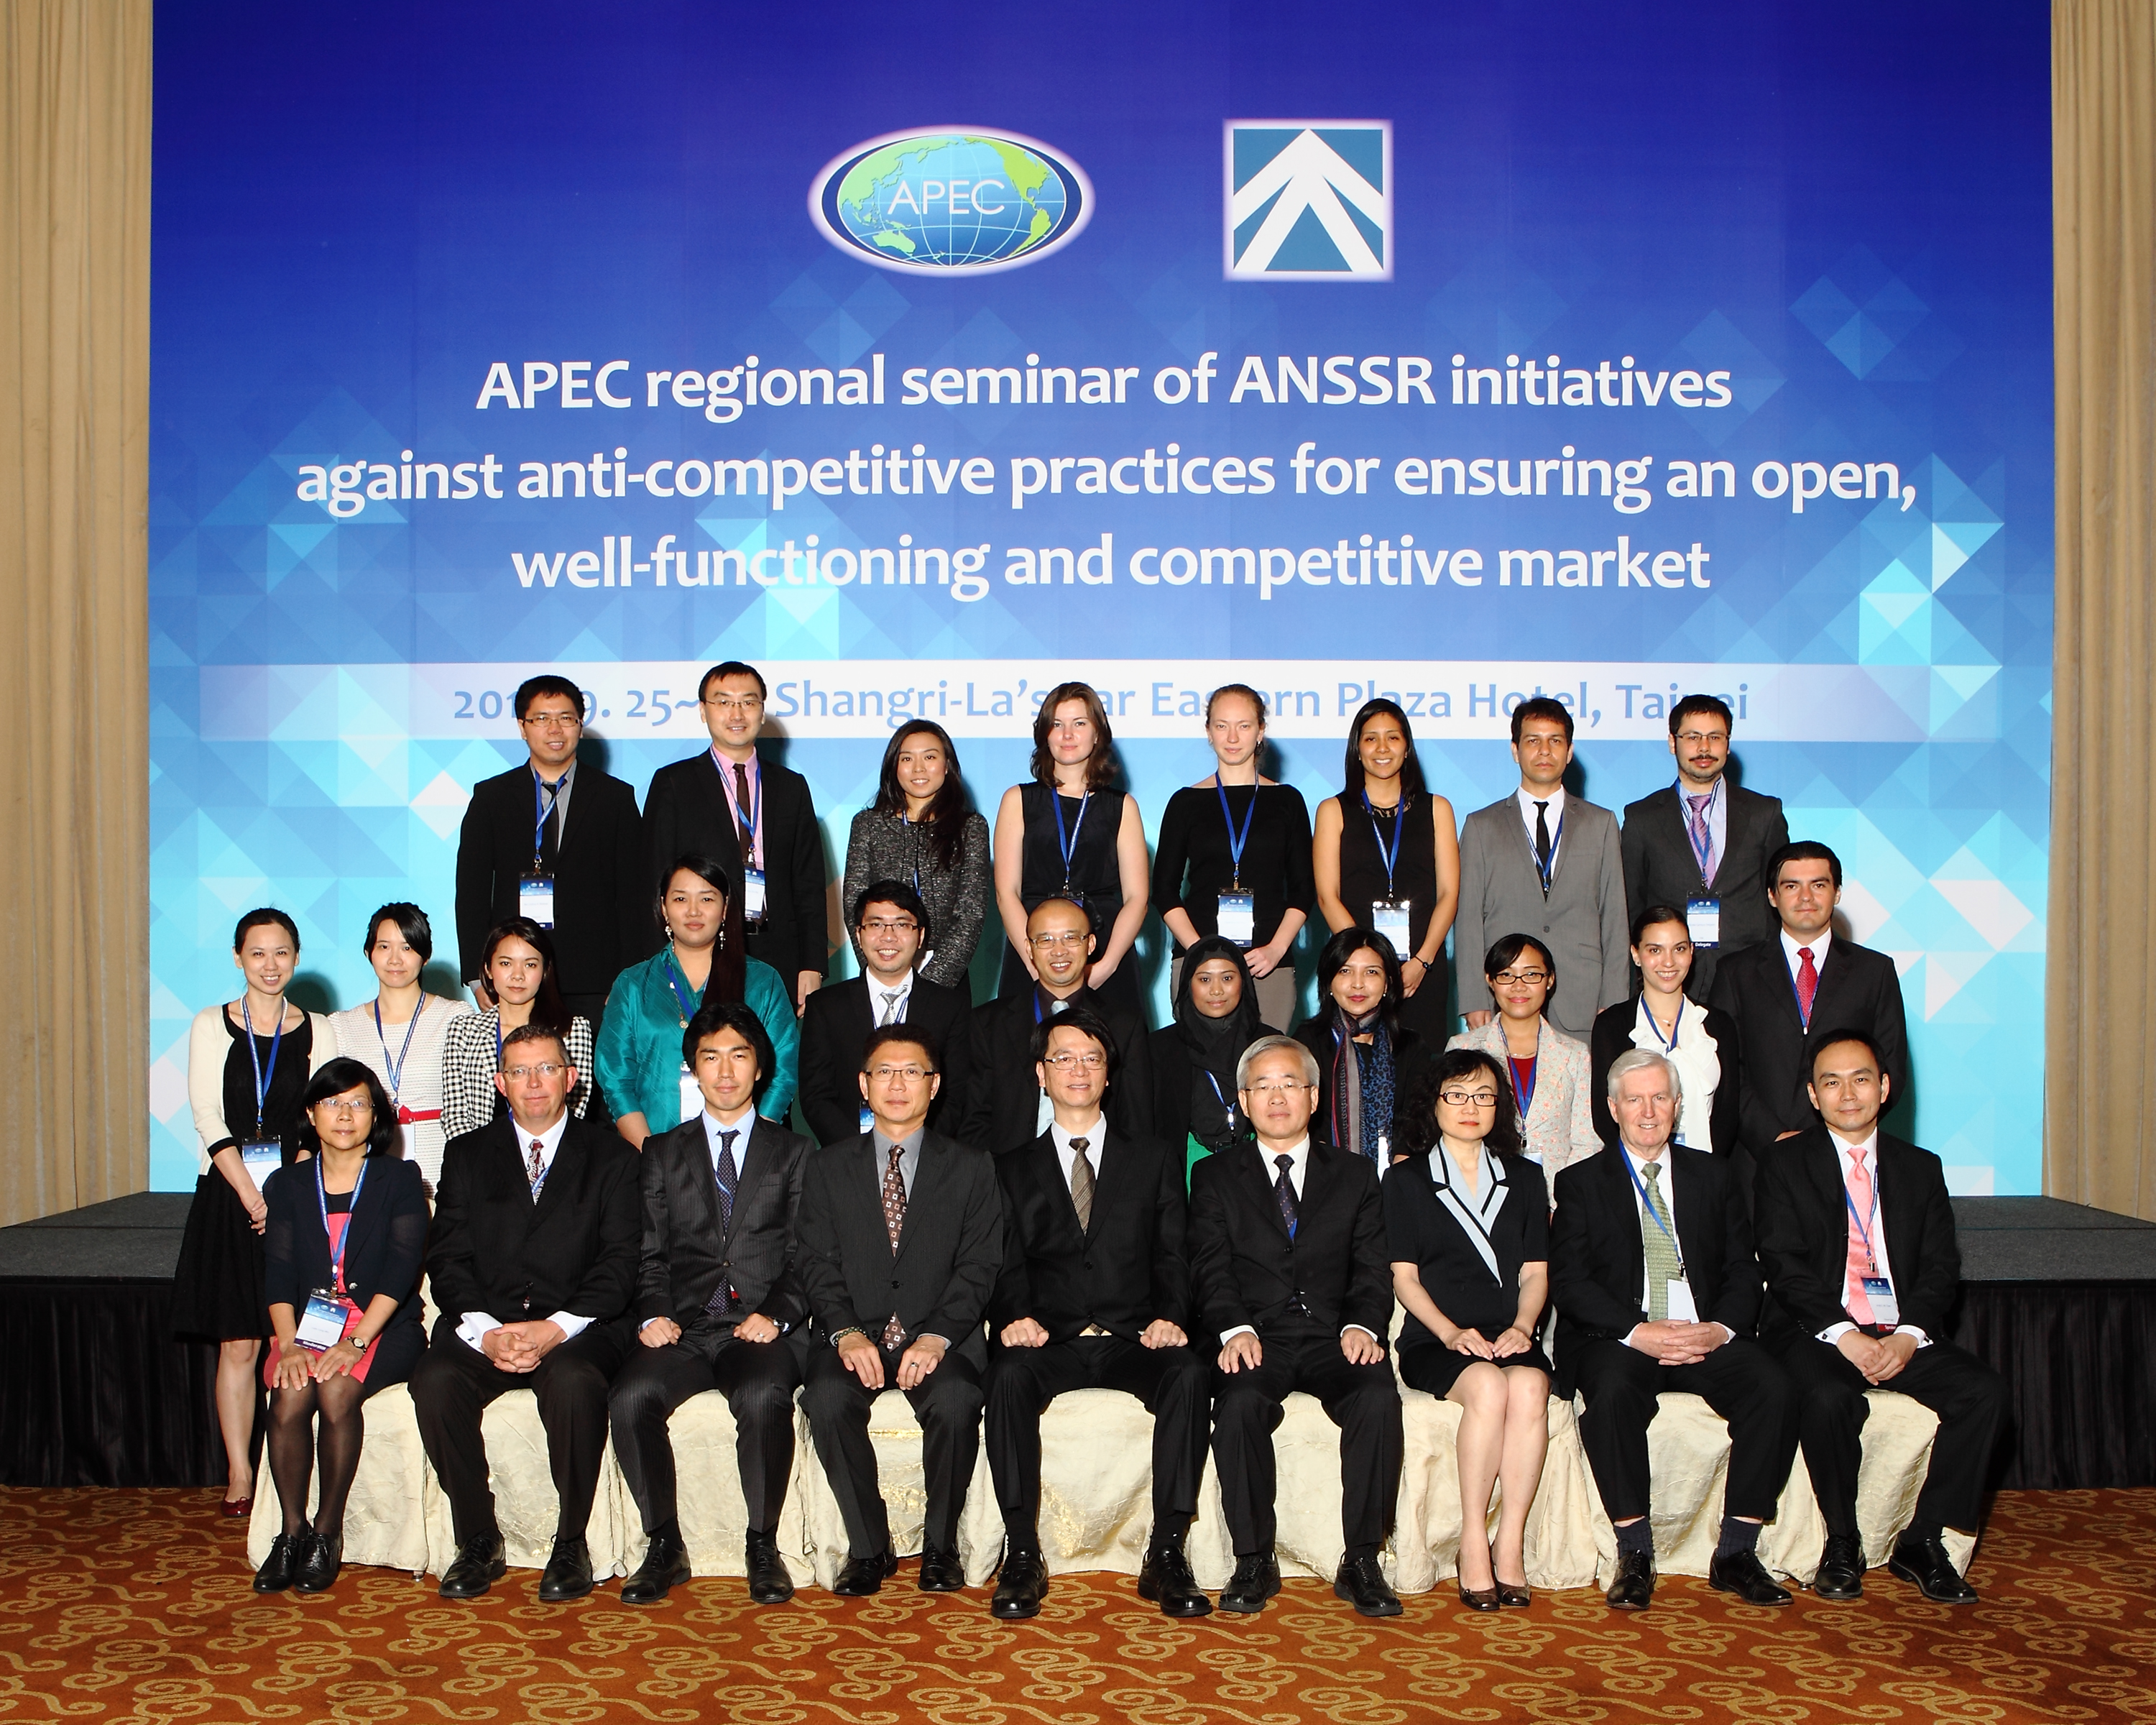 公平會「2013年APEC競爭政策訓練課程」與會貴賓合照